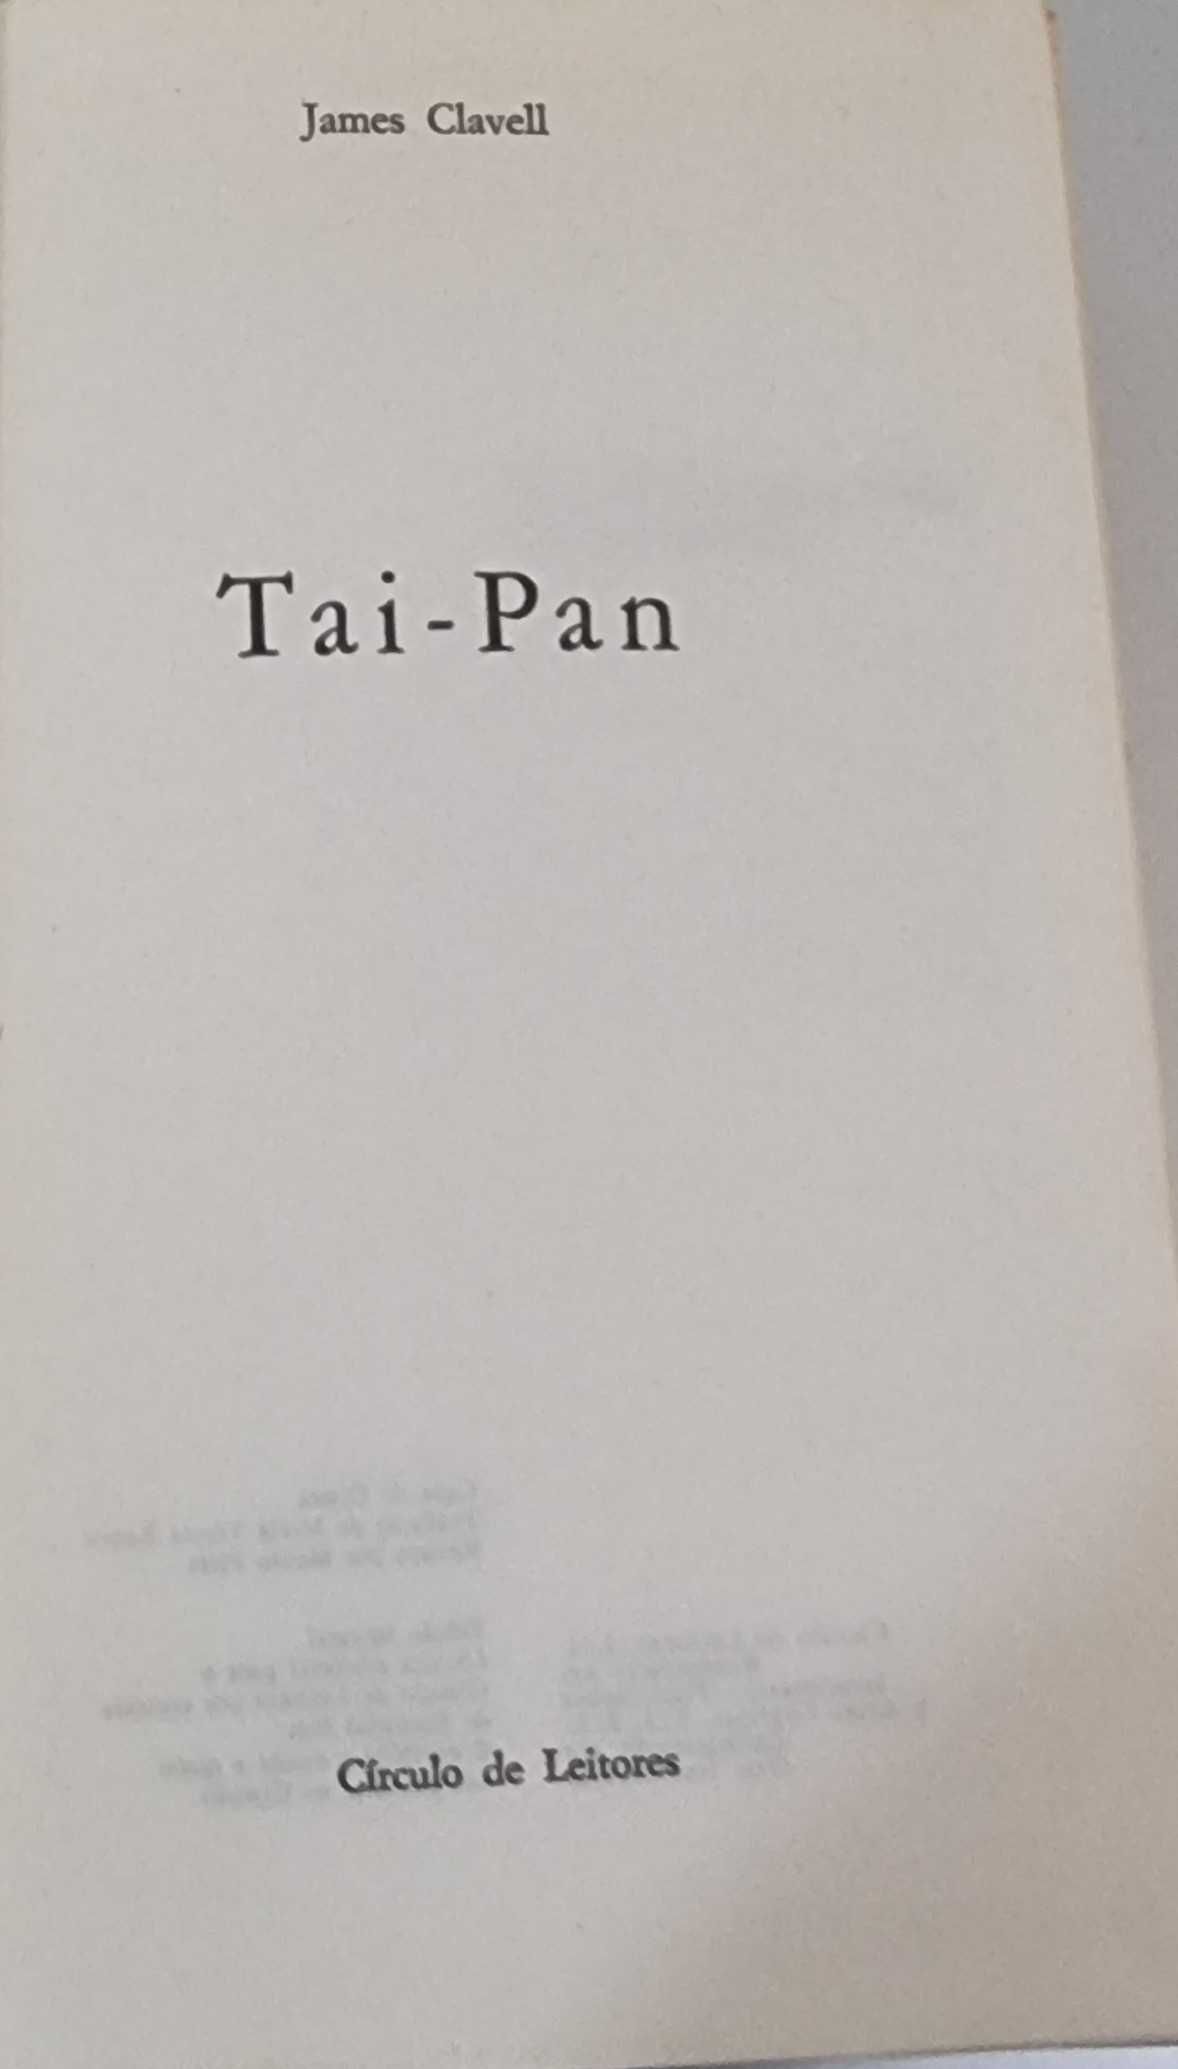 Livro "Tai-Pan" de James Clavell